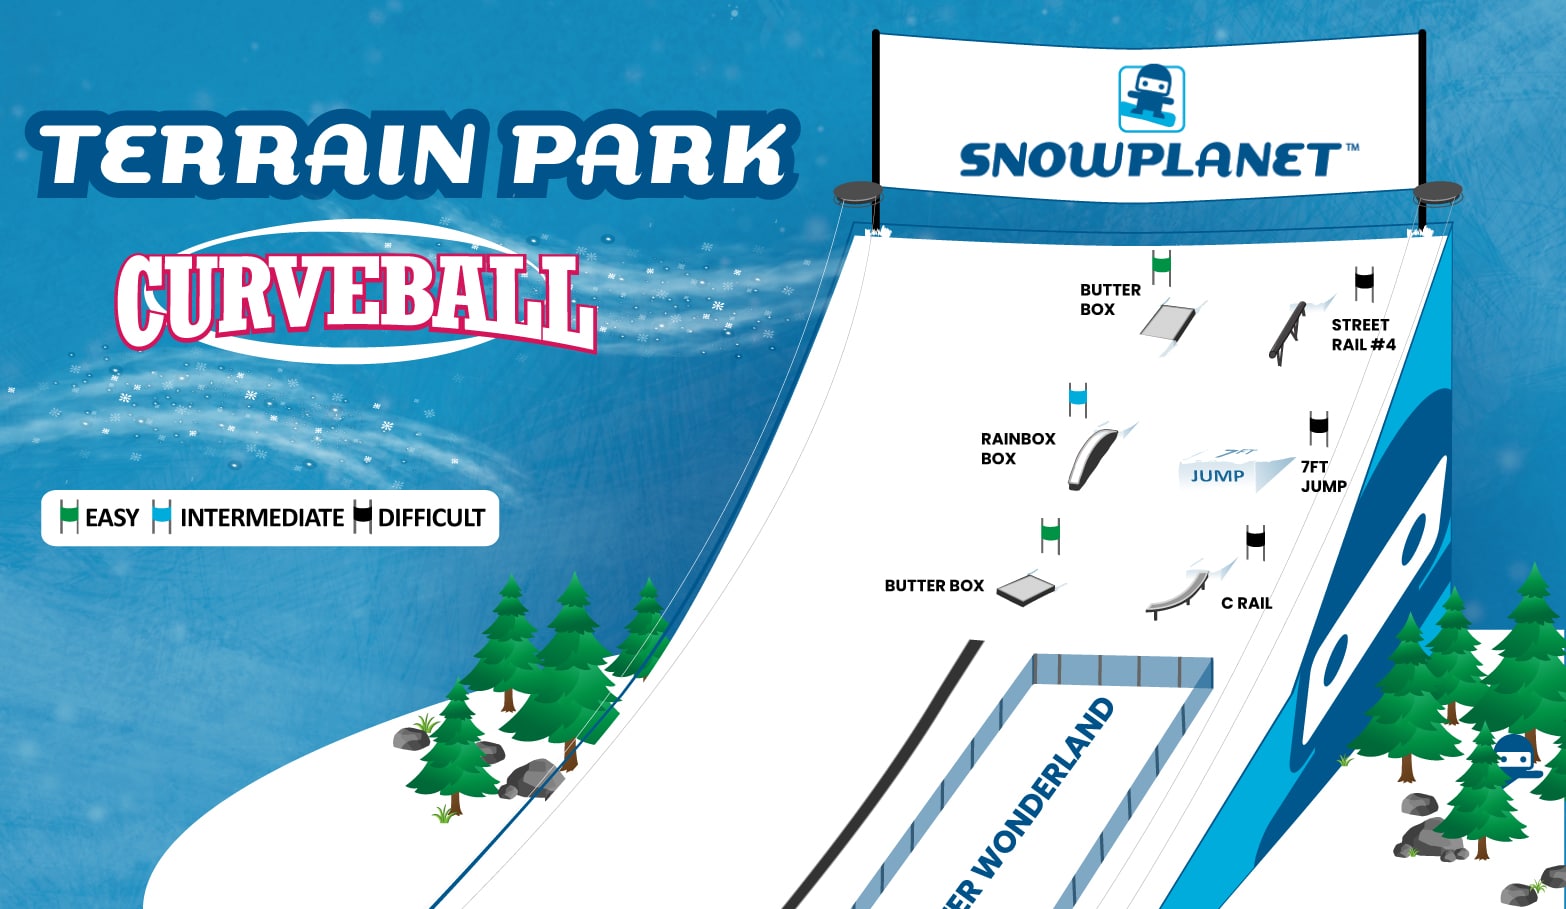 Map of terrain park at Snowplanet indoor ski resort